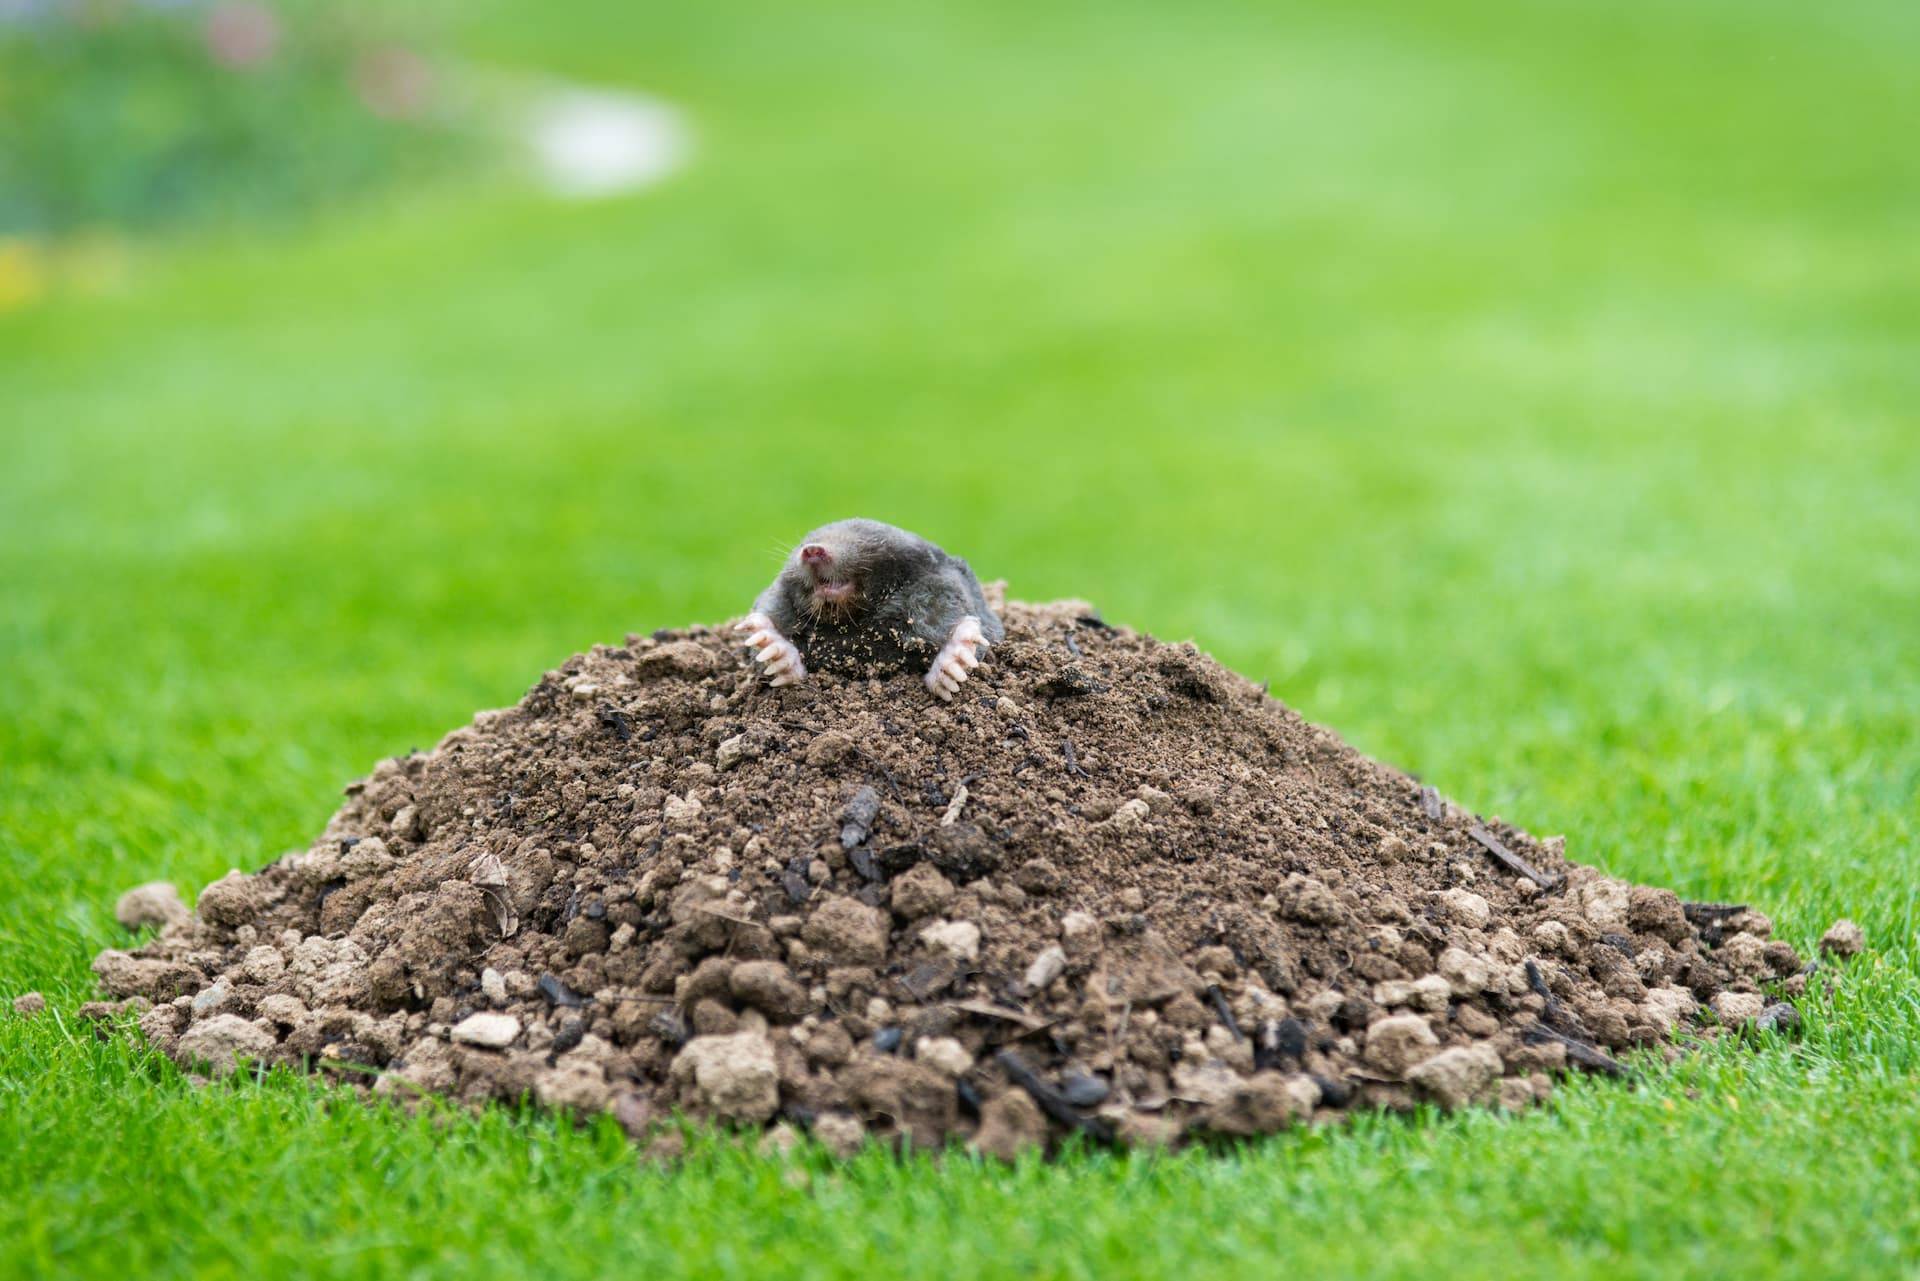 mole management in your garden